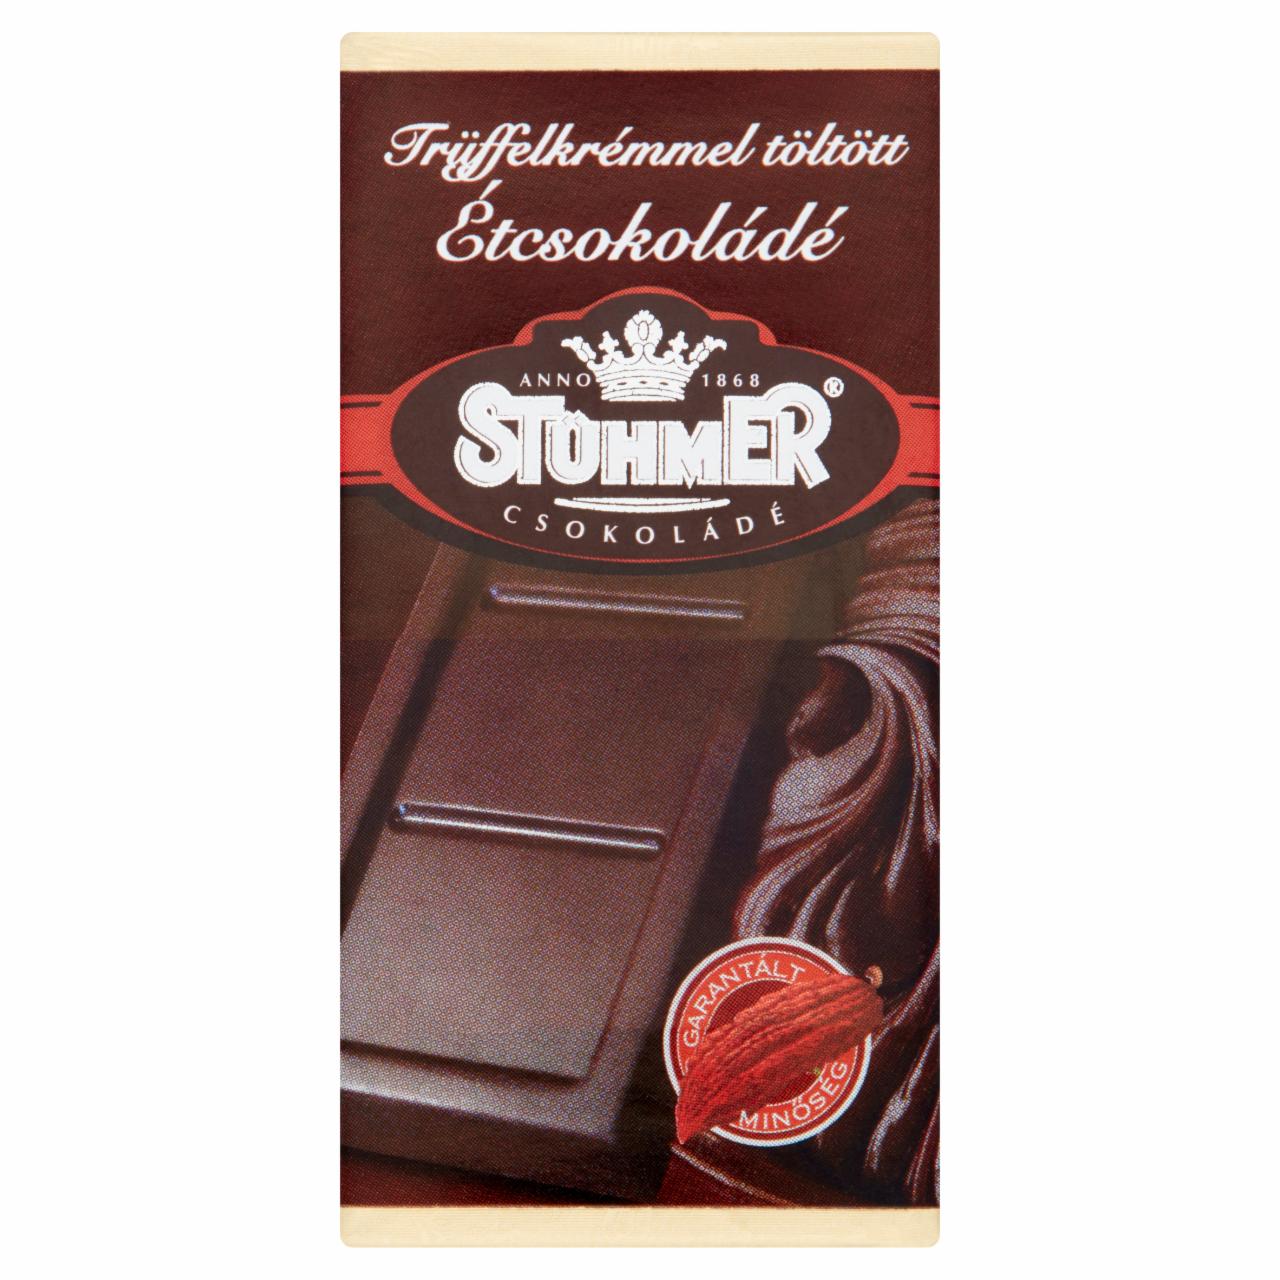 Képek - Stühmer trüffelkrémmel töltött étcsokoládé 20 g